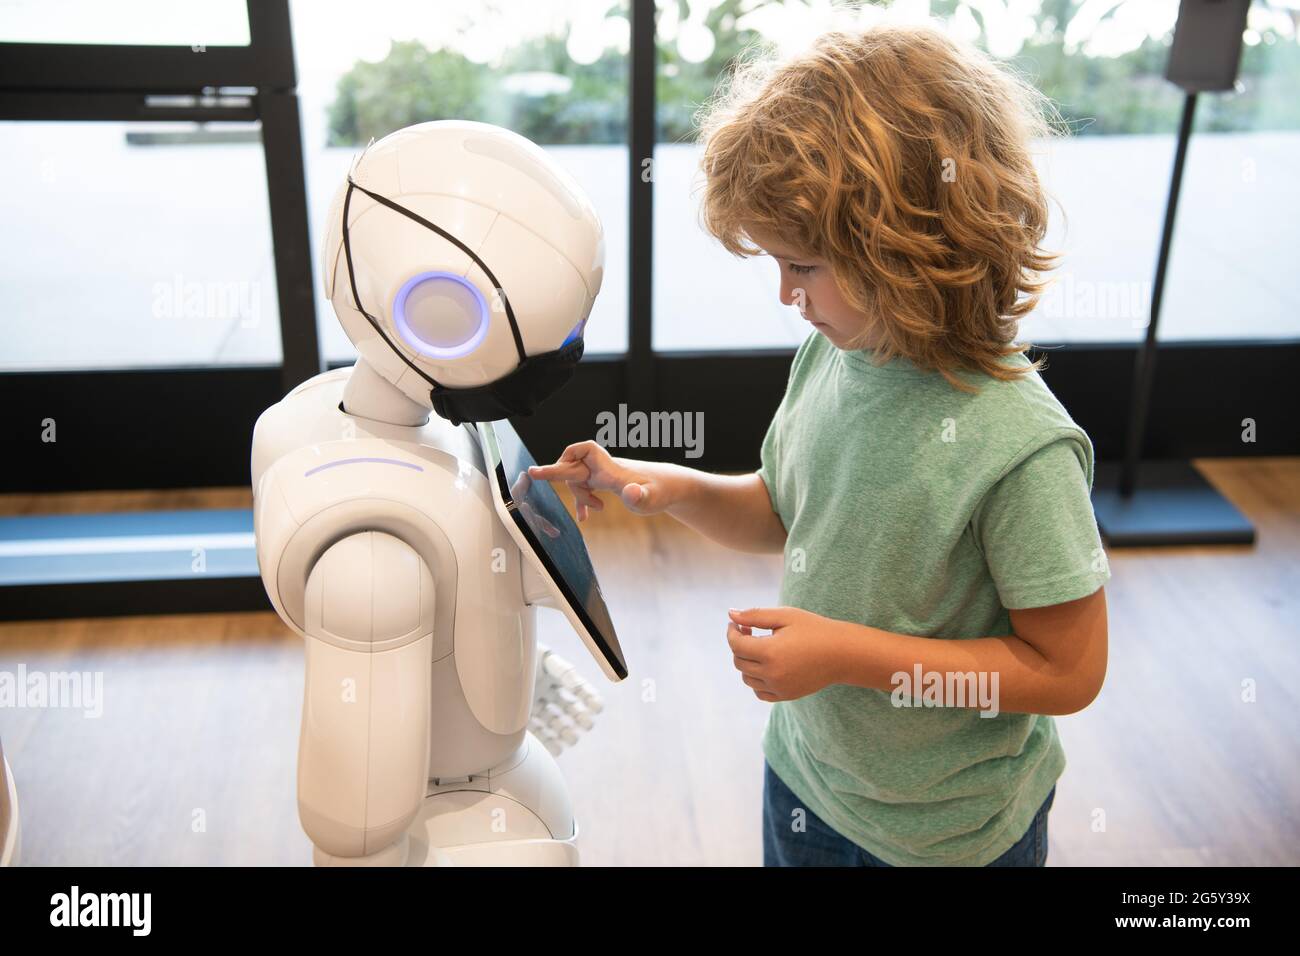 un petit garçon intelligent communique avec la technologie d'assistant robot pour l'éducation moderne, la robotique Banque D'Images